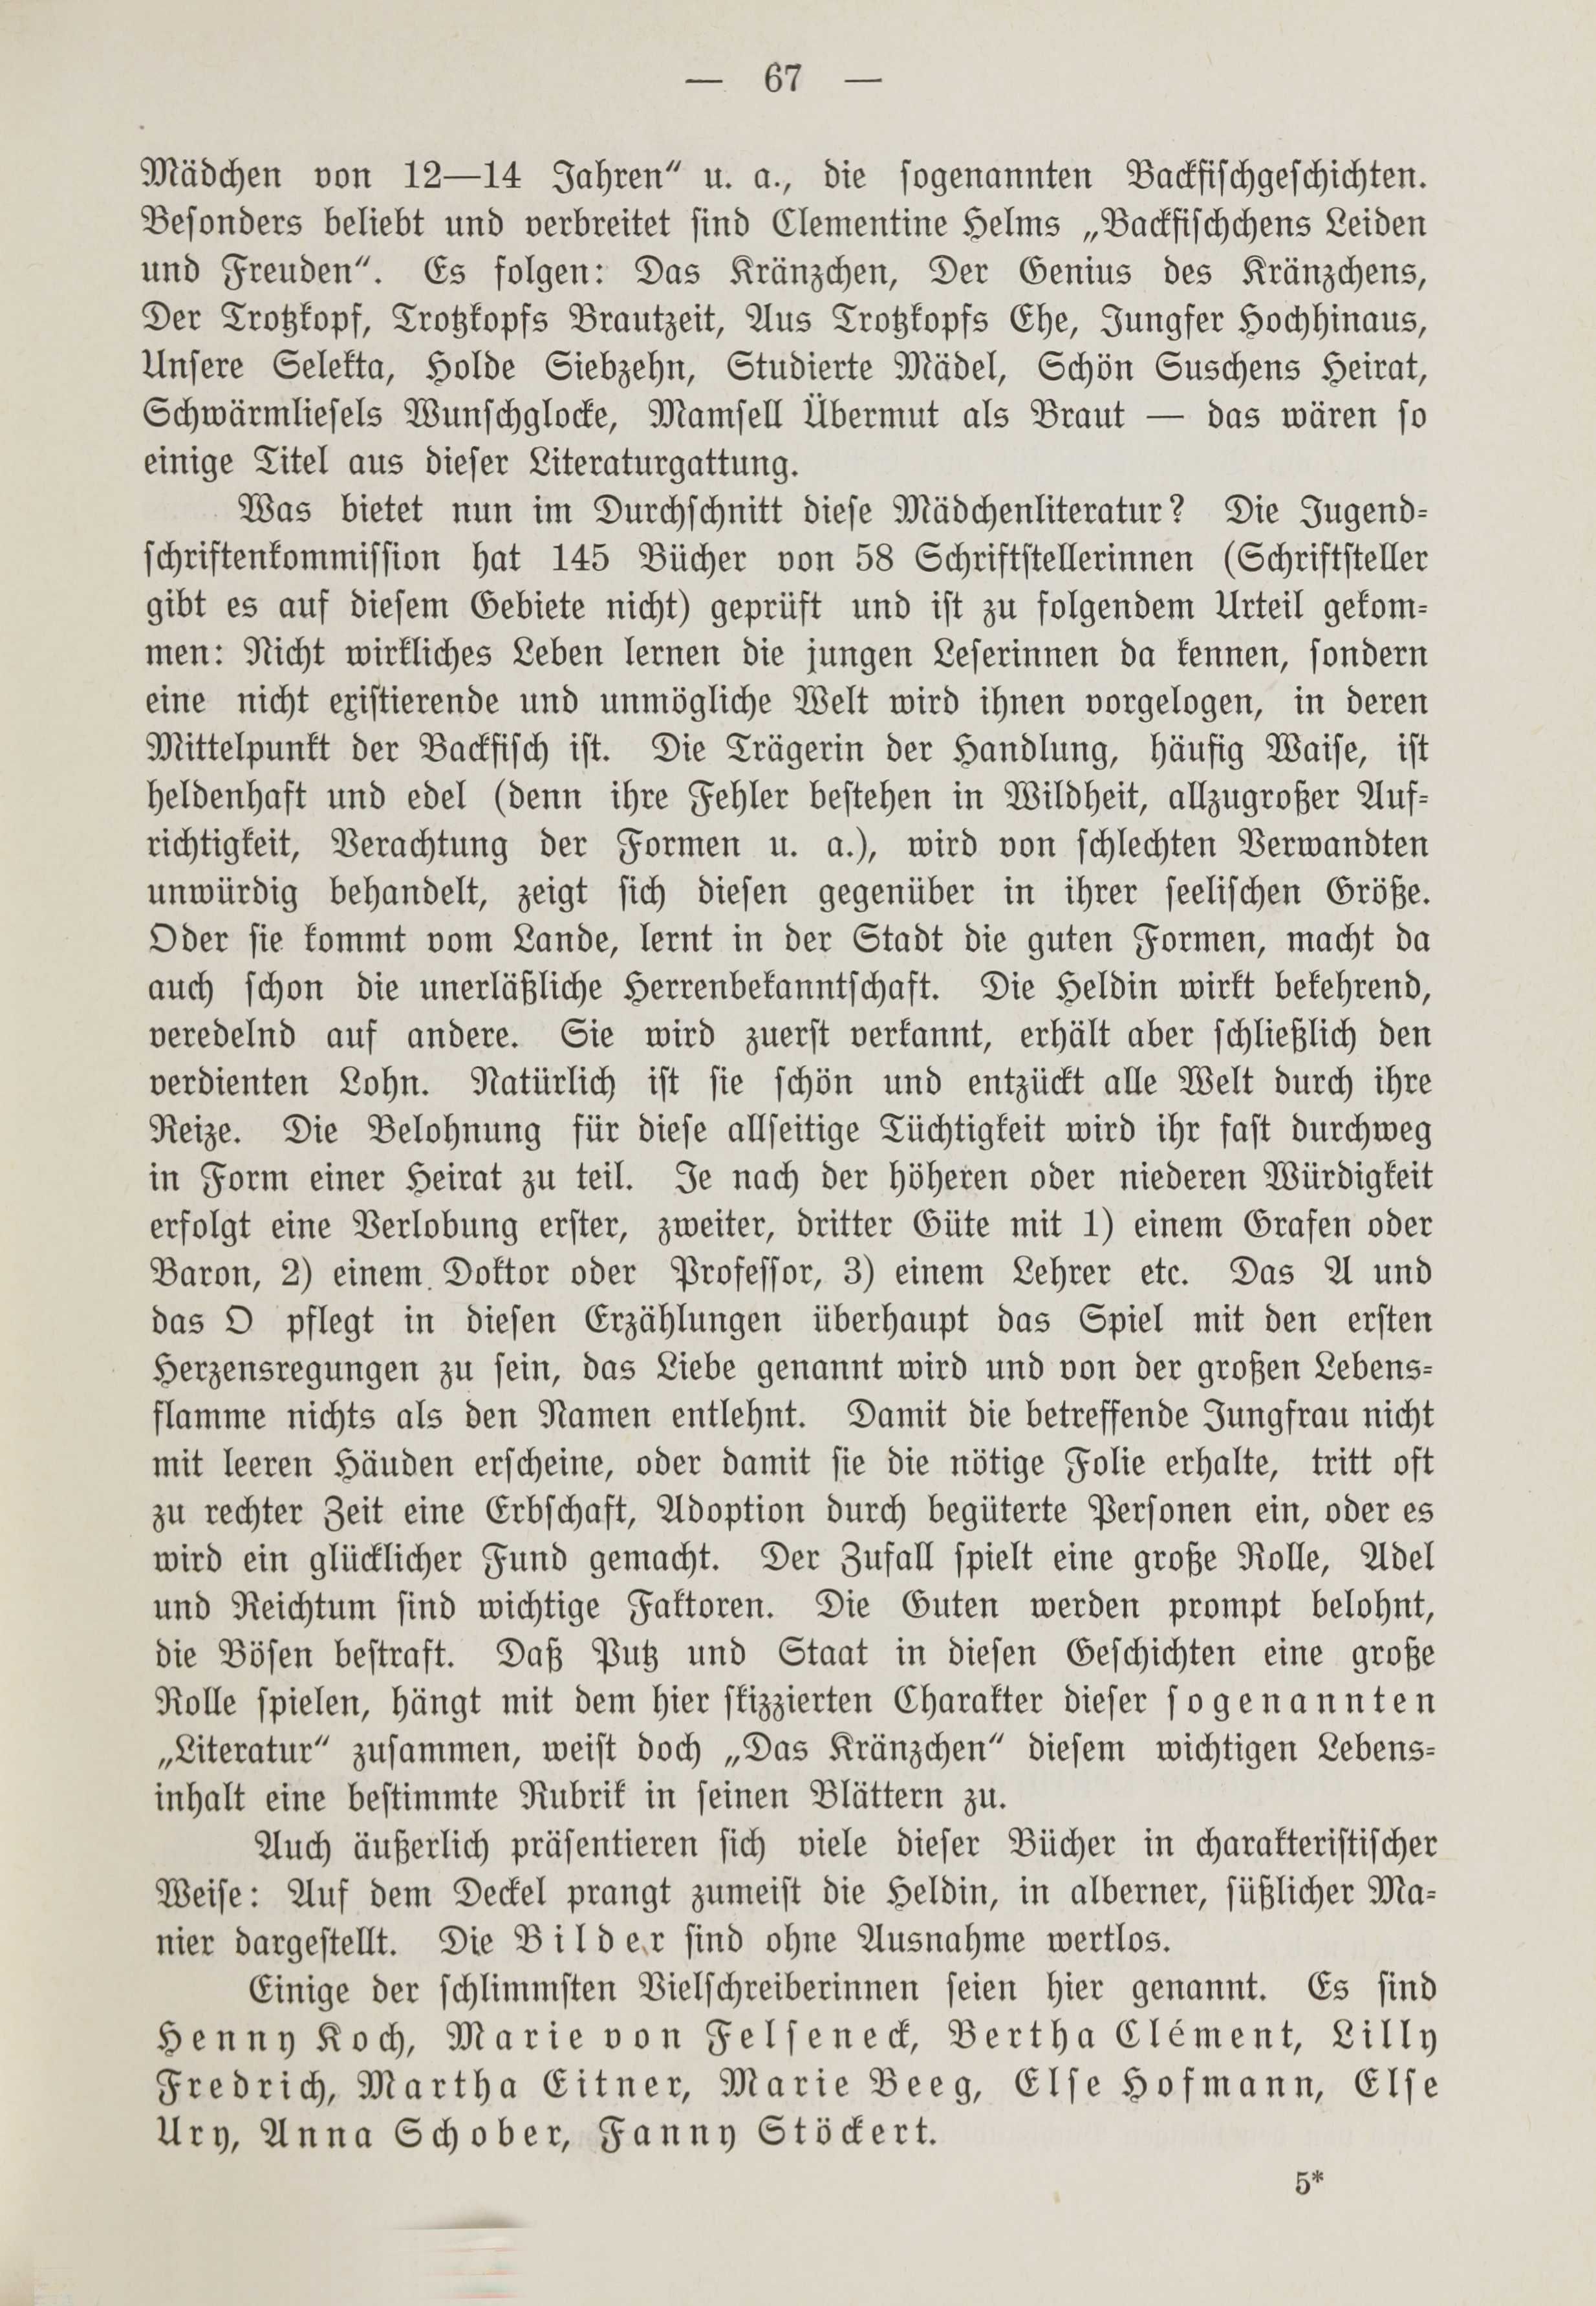 Deutsche Monatsschrift für Russland [1] (1912) | 74. (67) Main body of text